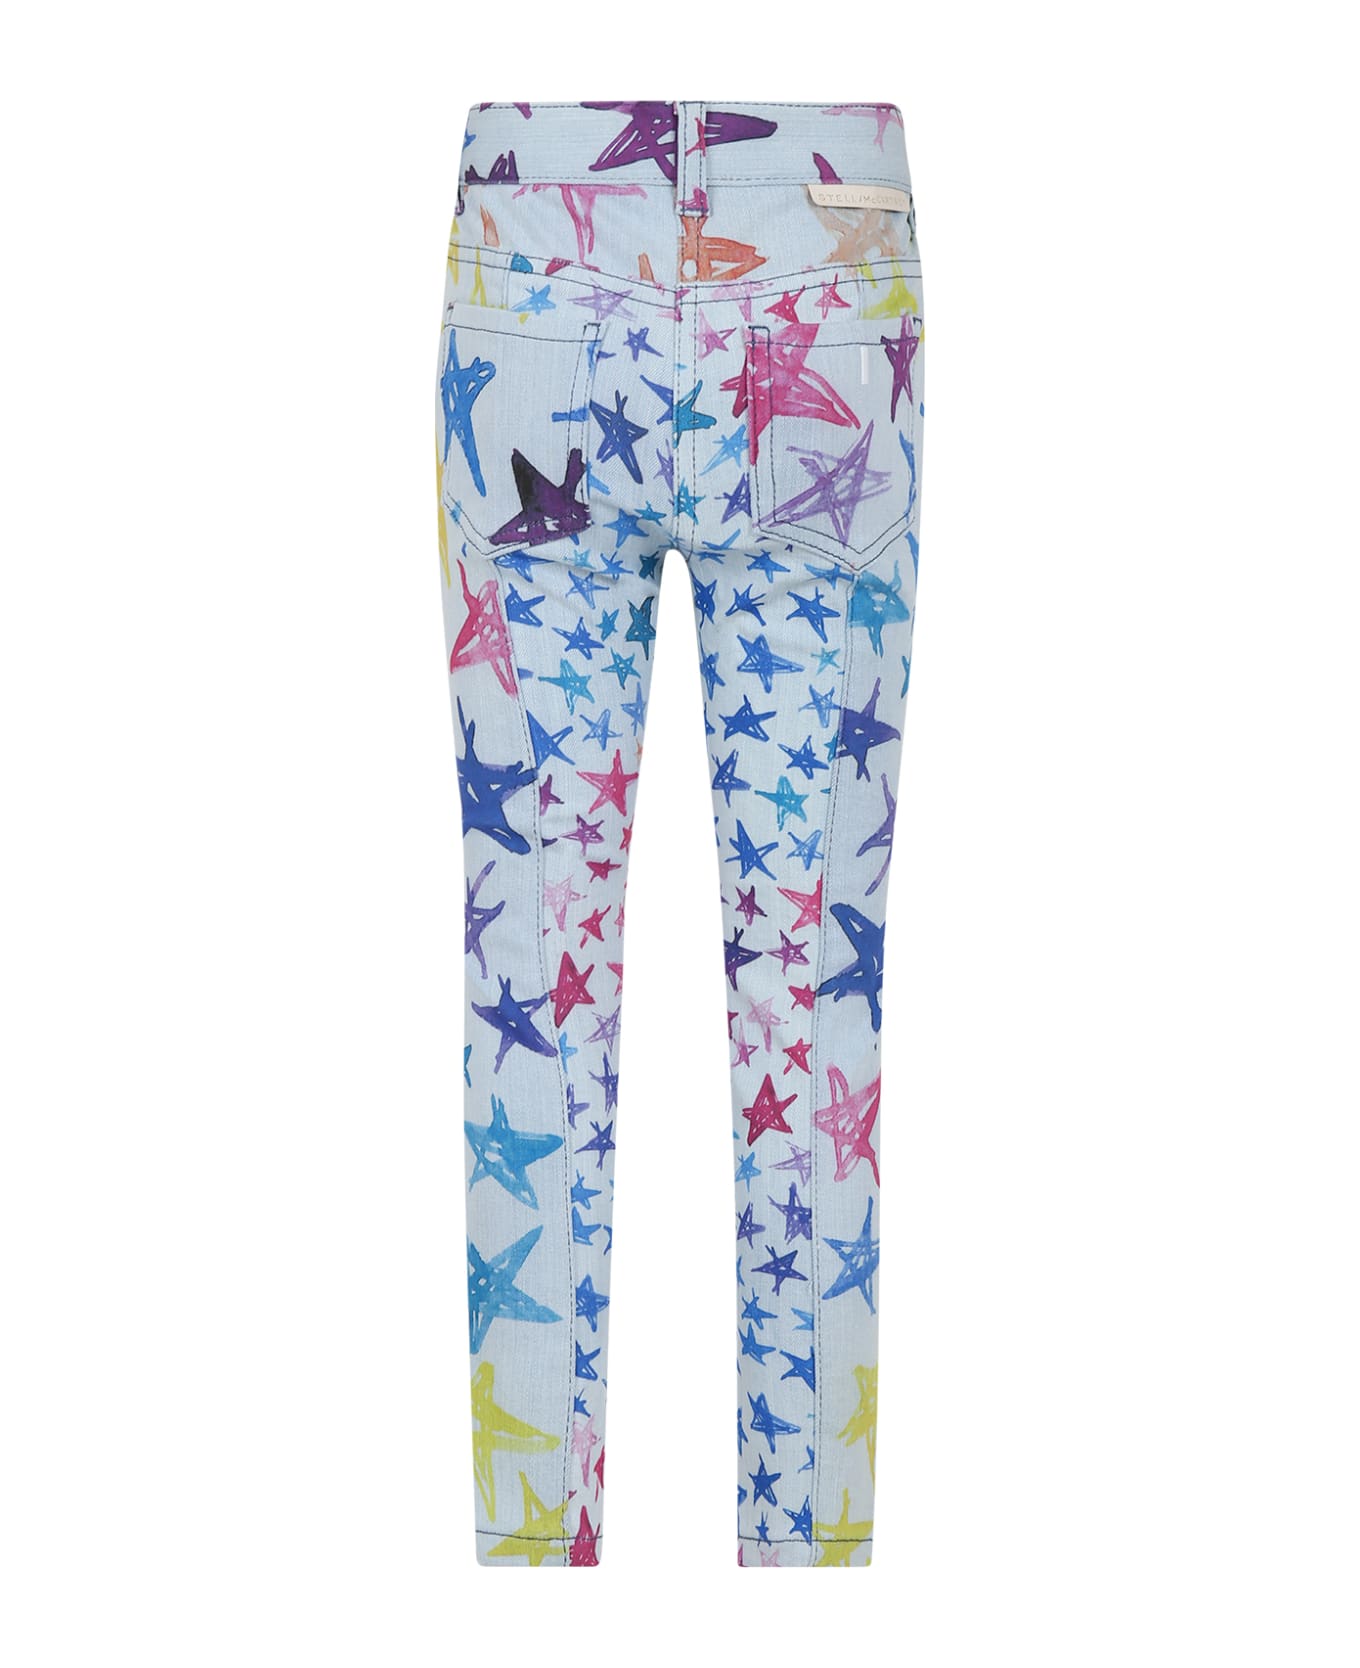 Stella McCartney Kids Light Blue Jeans For Girl With Stars Print - Denim